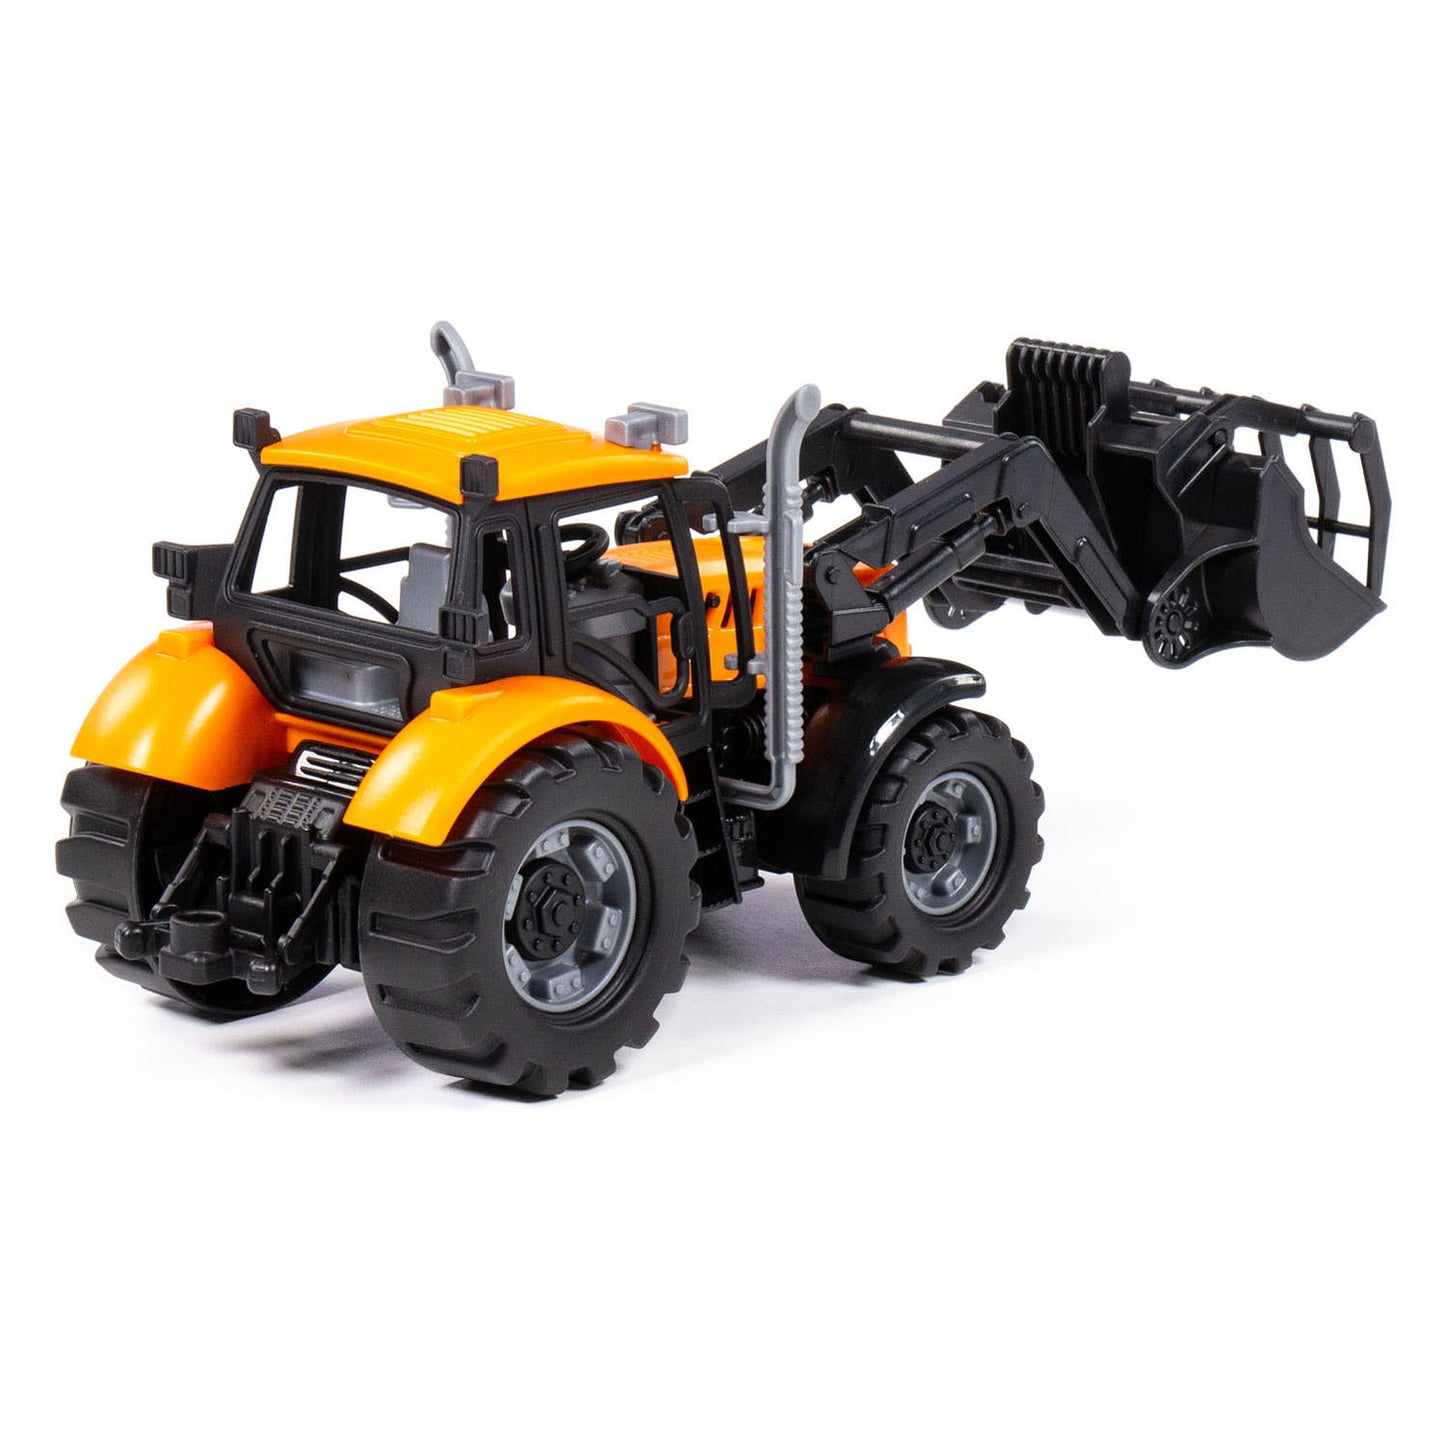 Cavallino Toys Cavallino Tractor con caricabatterie giallo, scala 1:32